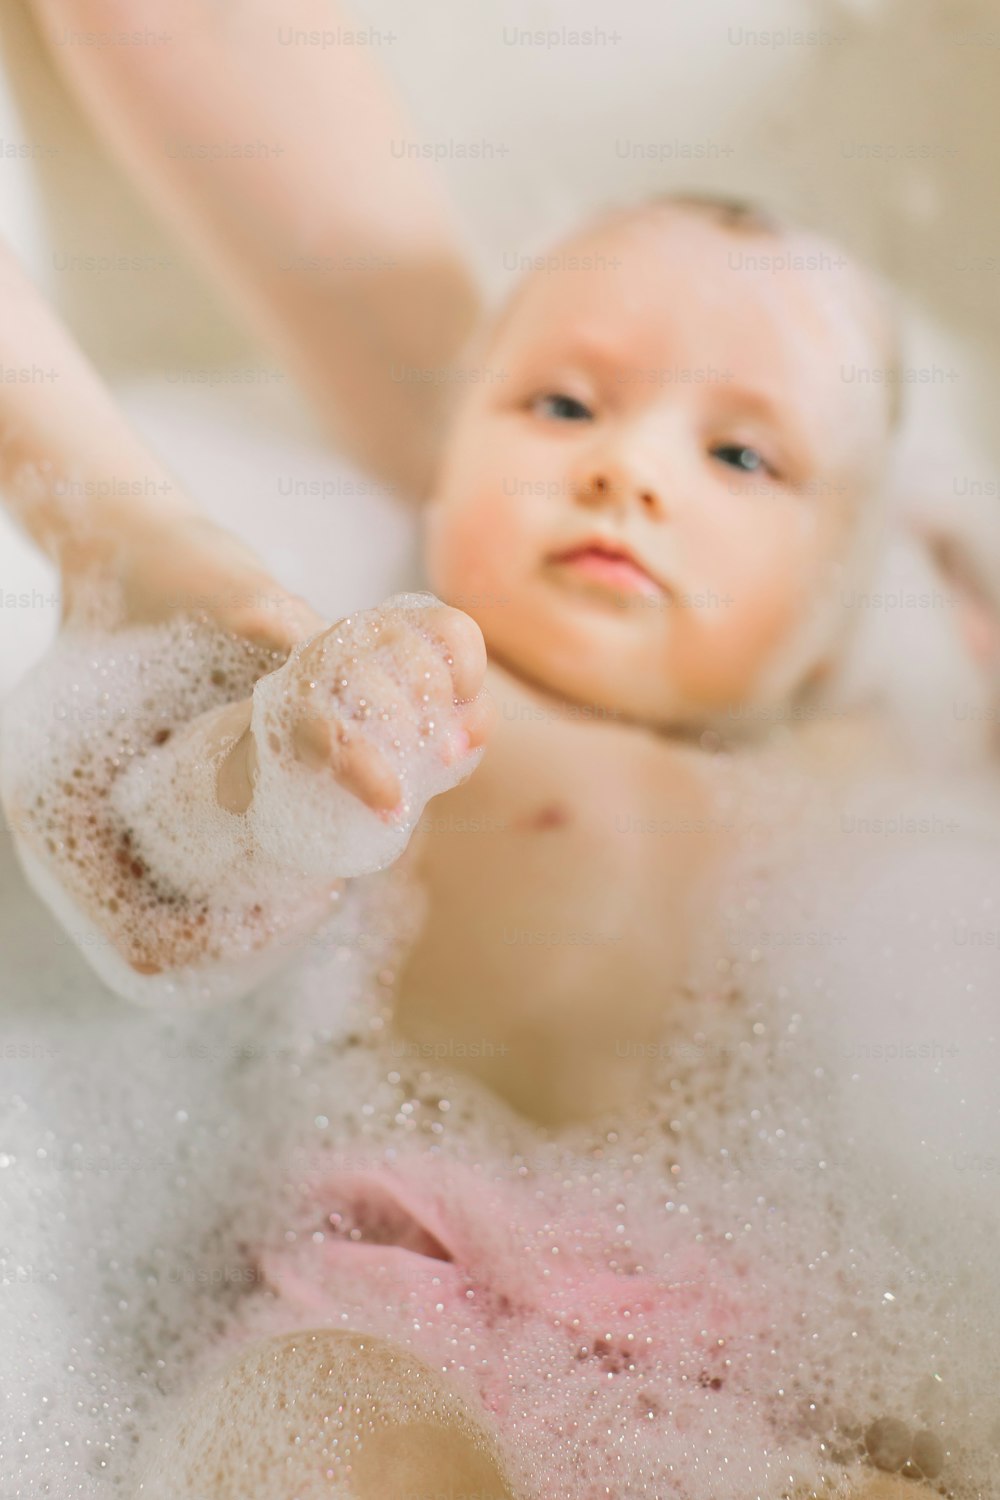 Bebé feliz nadando en el baño. Retrato de bebé bañándose en una bañera con espuma